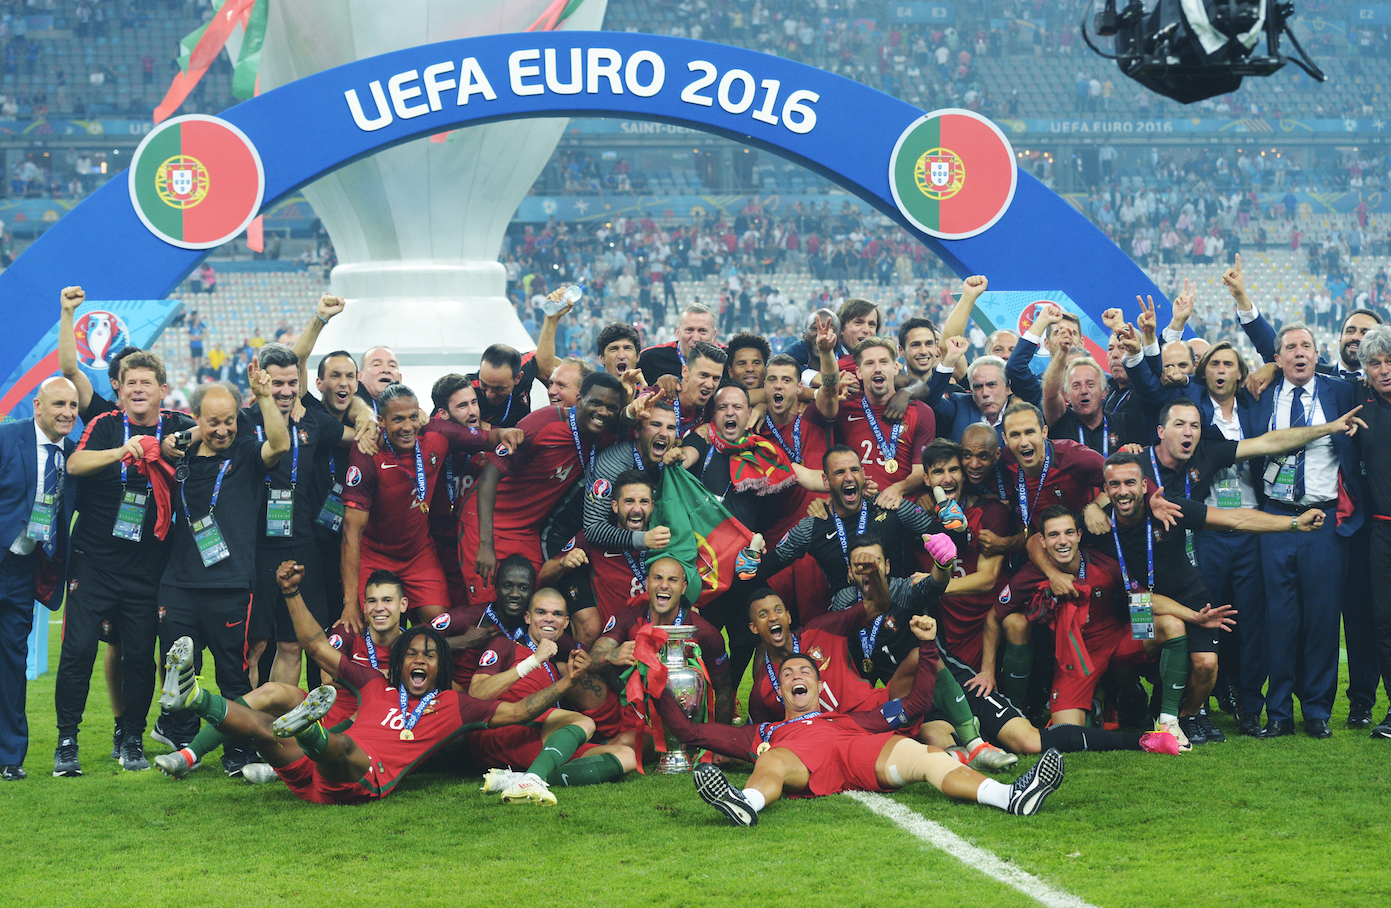 Сборная Португалии отмечает победу на чемпионате Европы — 2016 Фото: РИА Новости/Григорий Сысоев